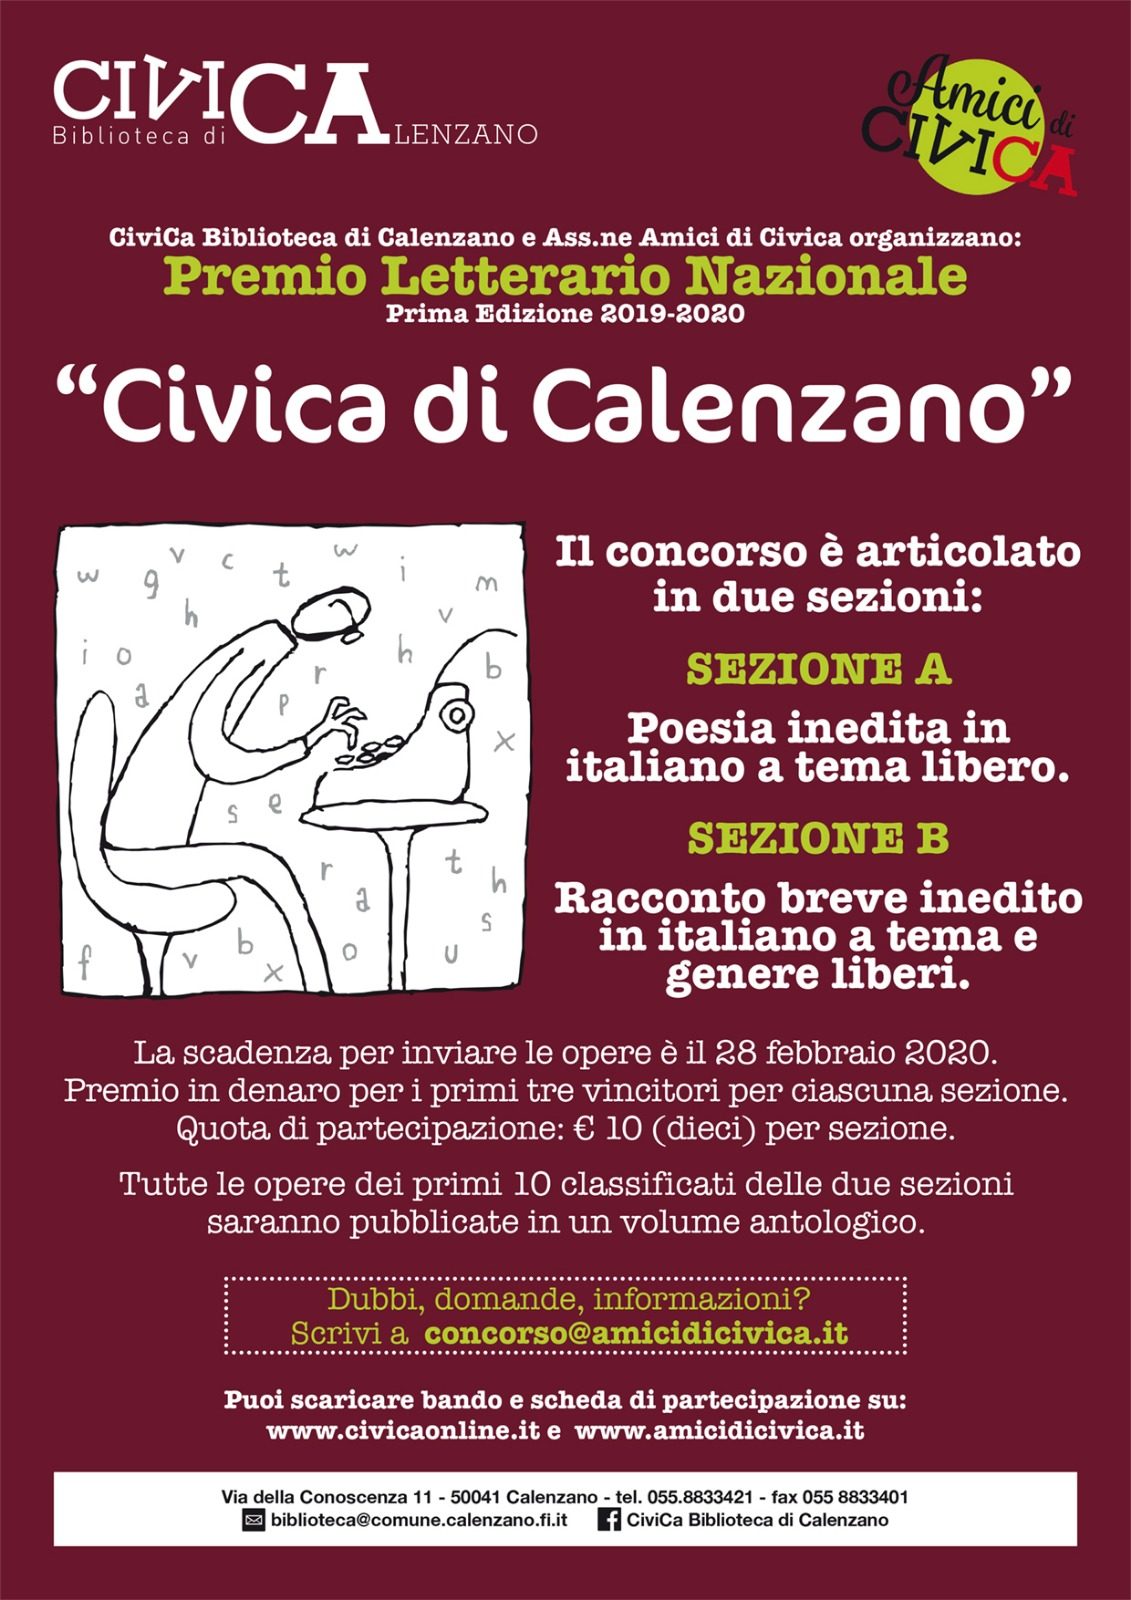 Premio Nazionale "Civica di Calenzano"